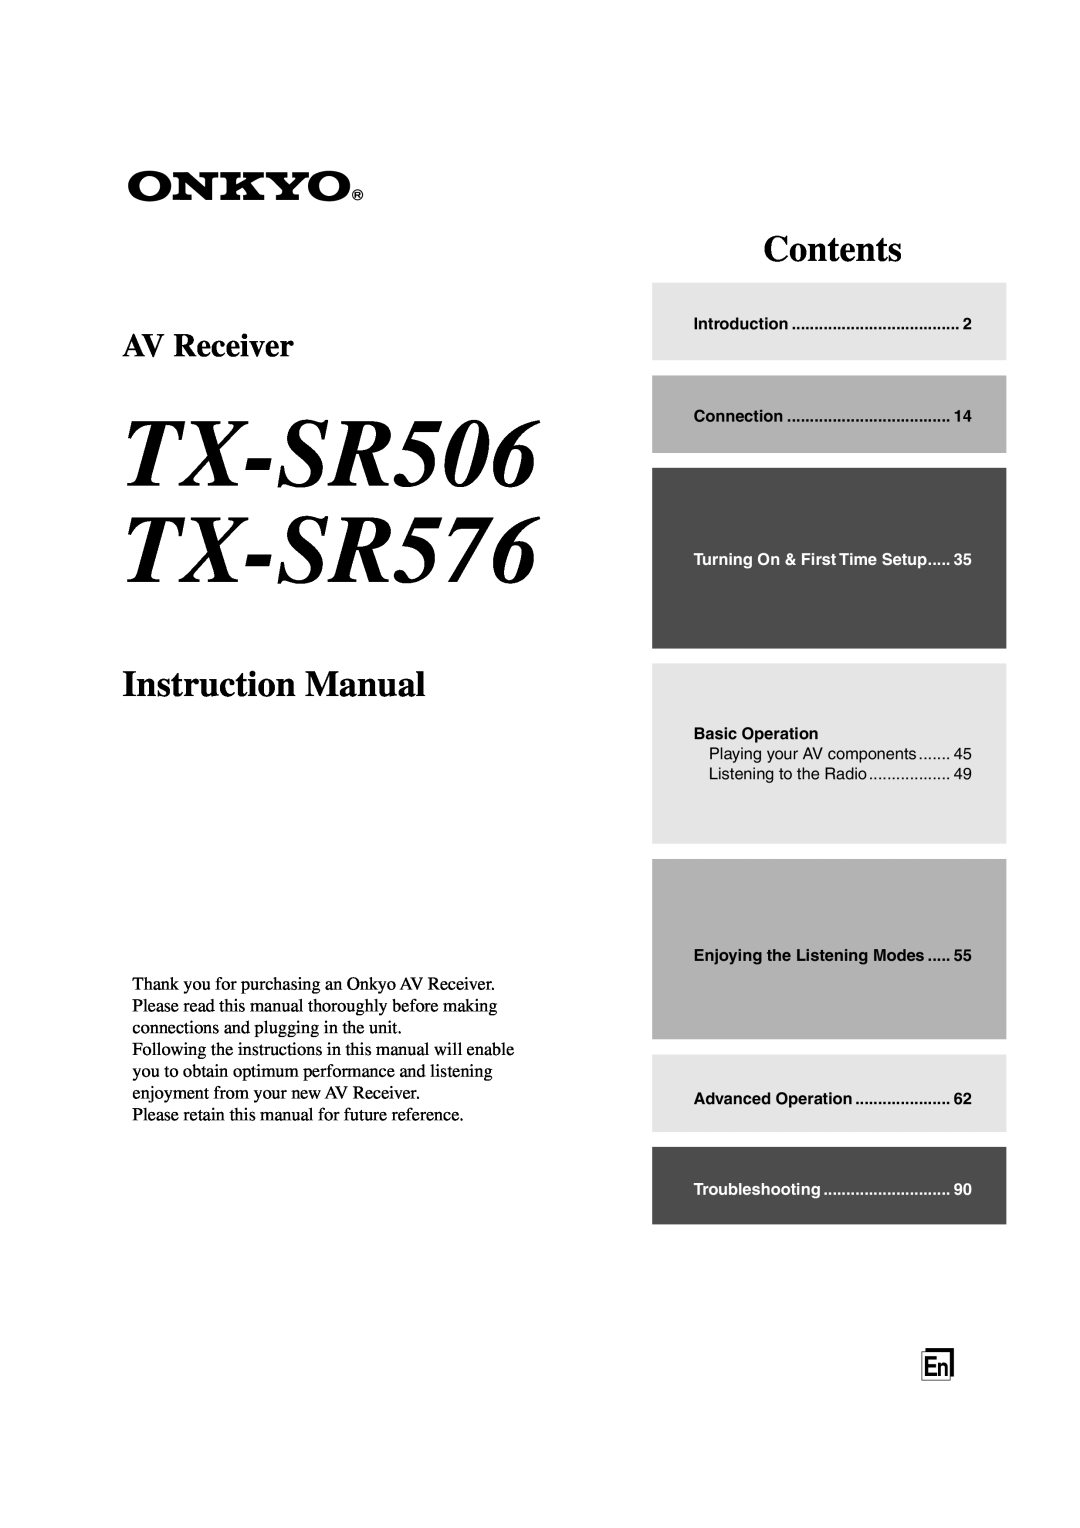 Onkyo instruction manual TX-SR506 TX-SR576, Contents, AV Receiver 